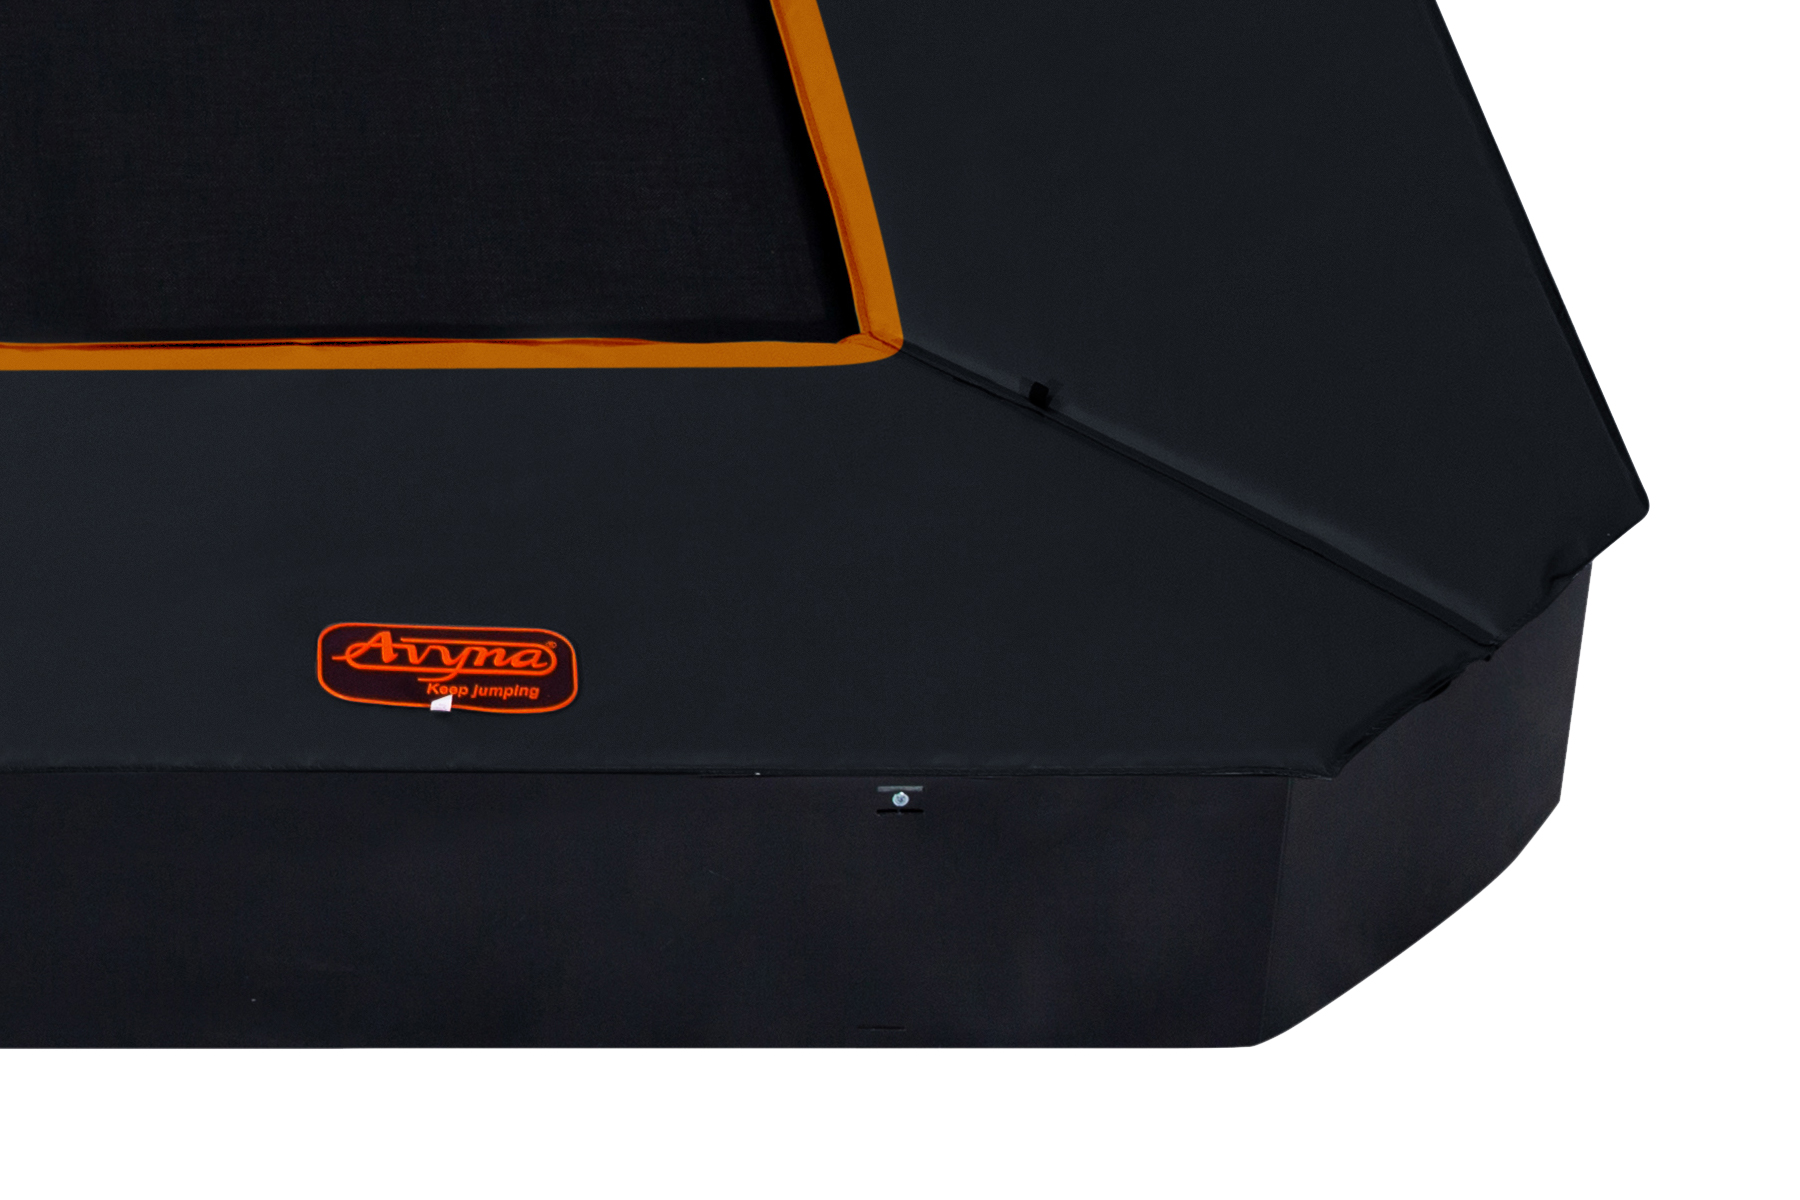 Avyna Pro-Line Top safe pad FlatLevel 223, 305x225 Schwarz